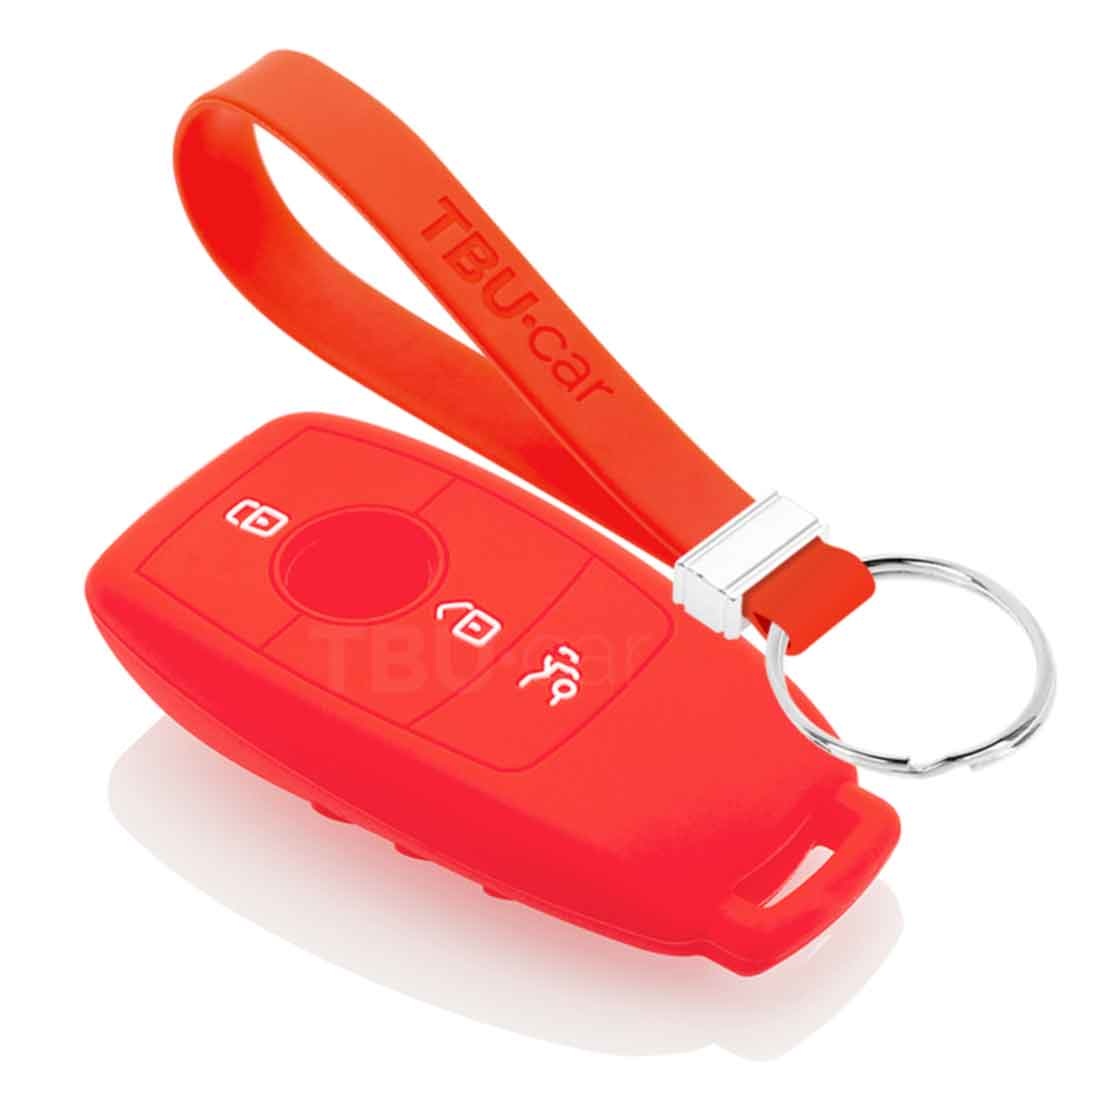 TBU car TBU car Autoschlüssel Hülle kompatibel mit Mercedes 3 Tasten (Keyless Entry) - Schutzhülle aus Silikon - Auto Schlüsselhülle Cover in Rot